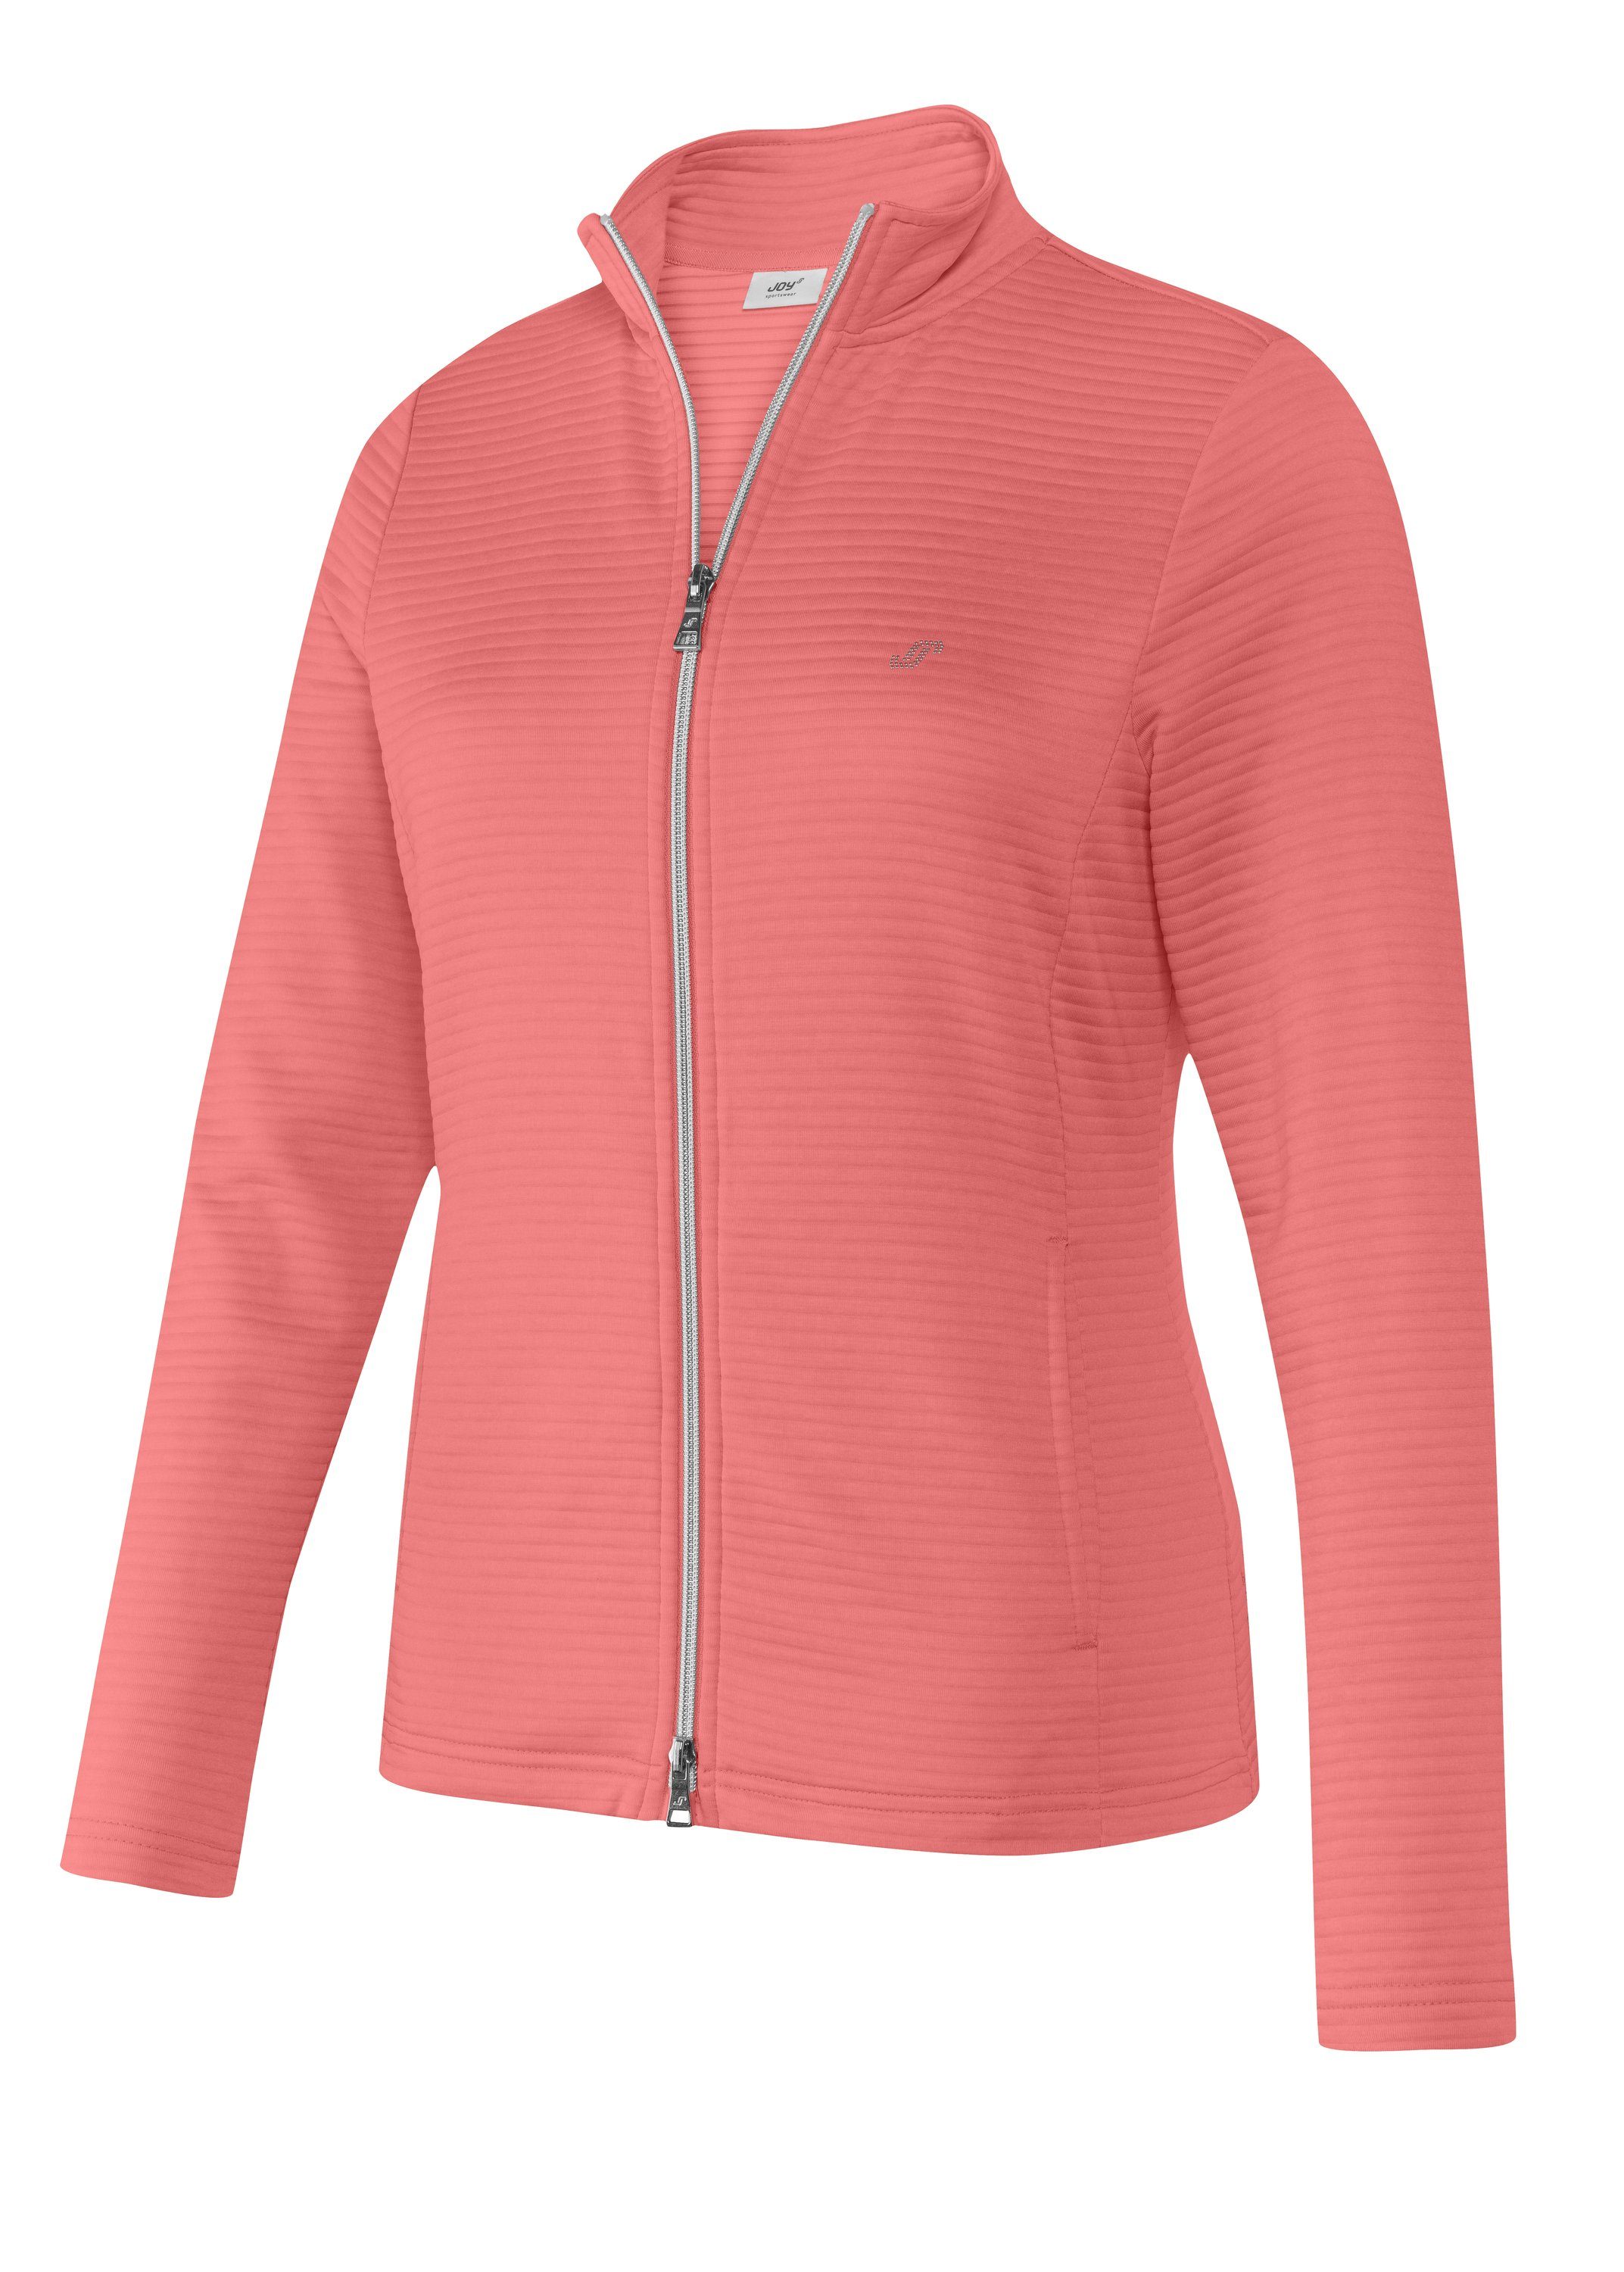 Joy Sportswear melange coral PEGGY pink Jacke Trainingsjacke